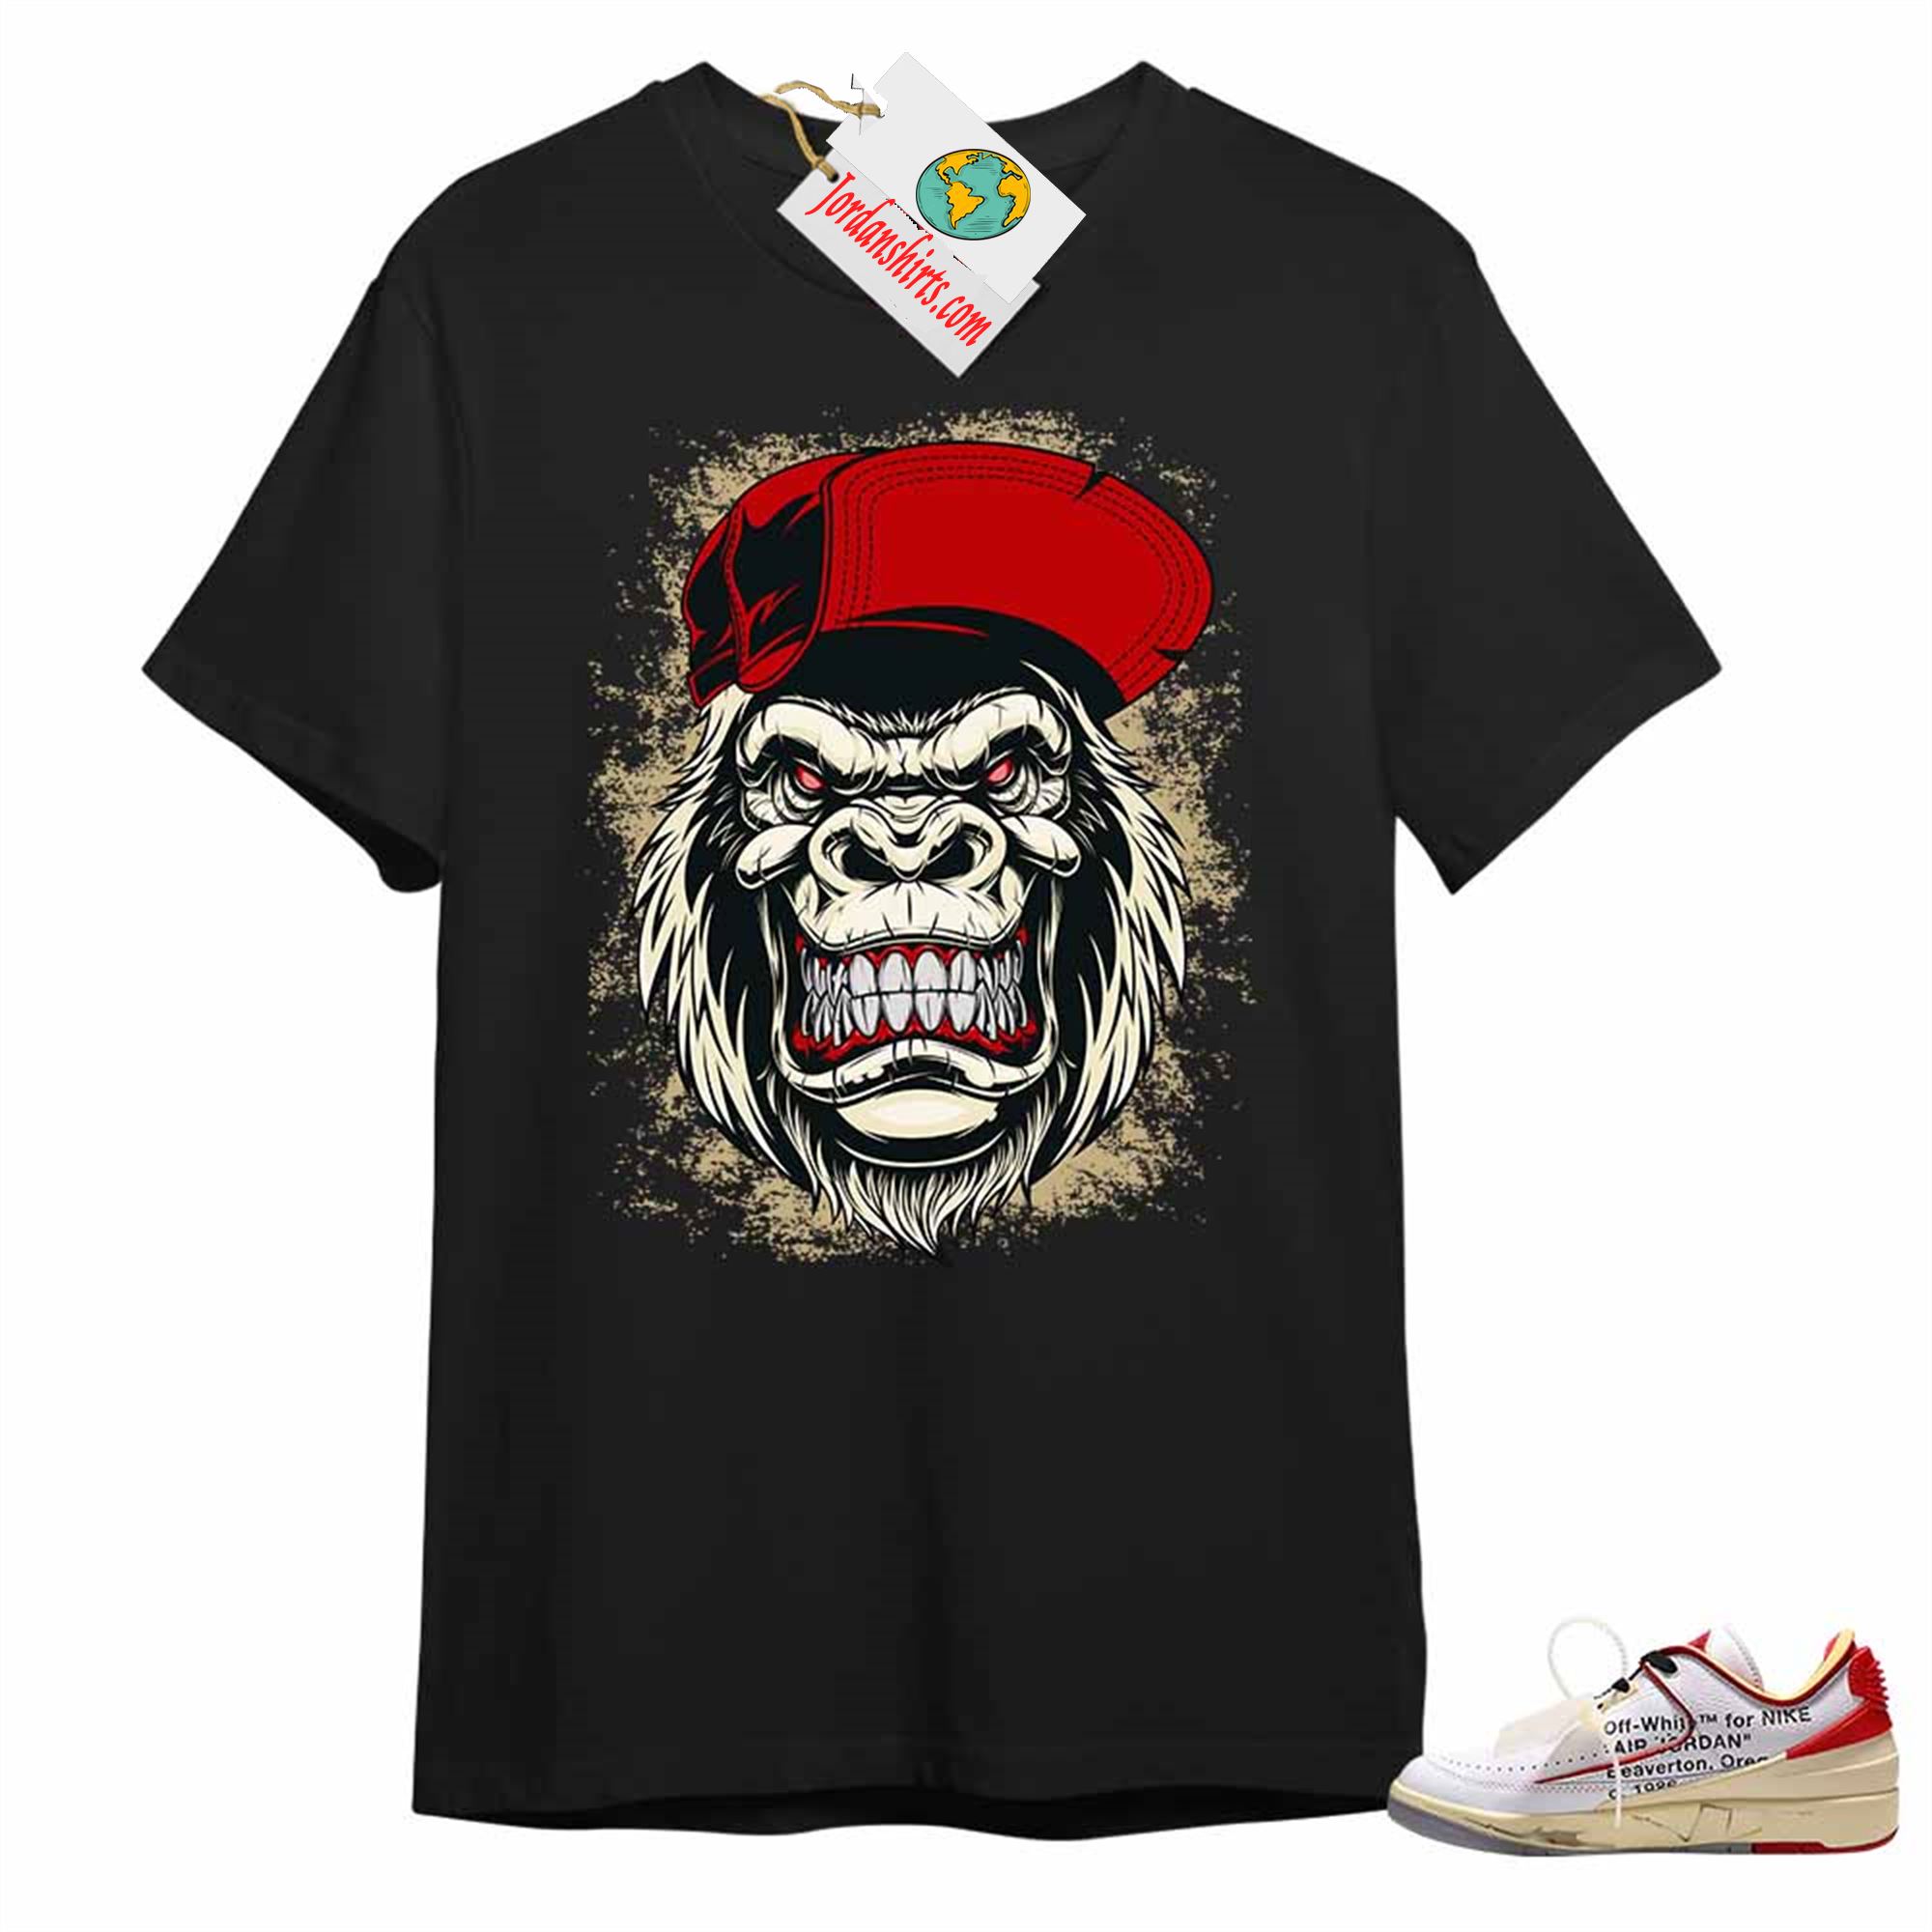 Jordan 2 Shirt, Ferocious Gorilla Black Air Jordan 2 Low White Red Off-white 2s Full Size Up To 5xl